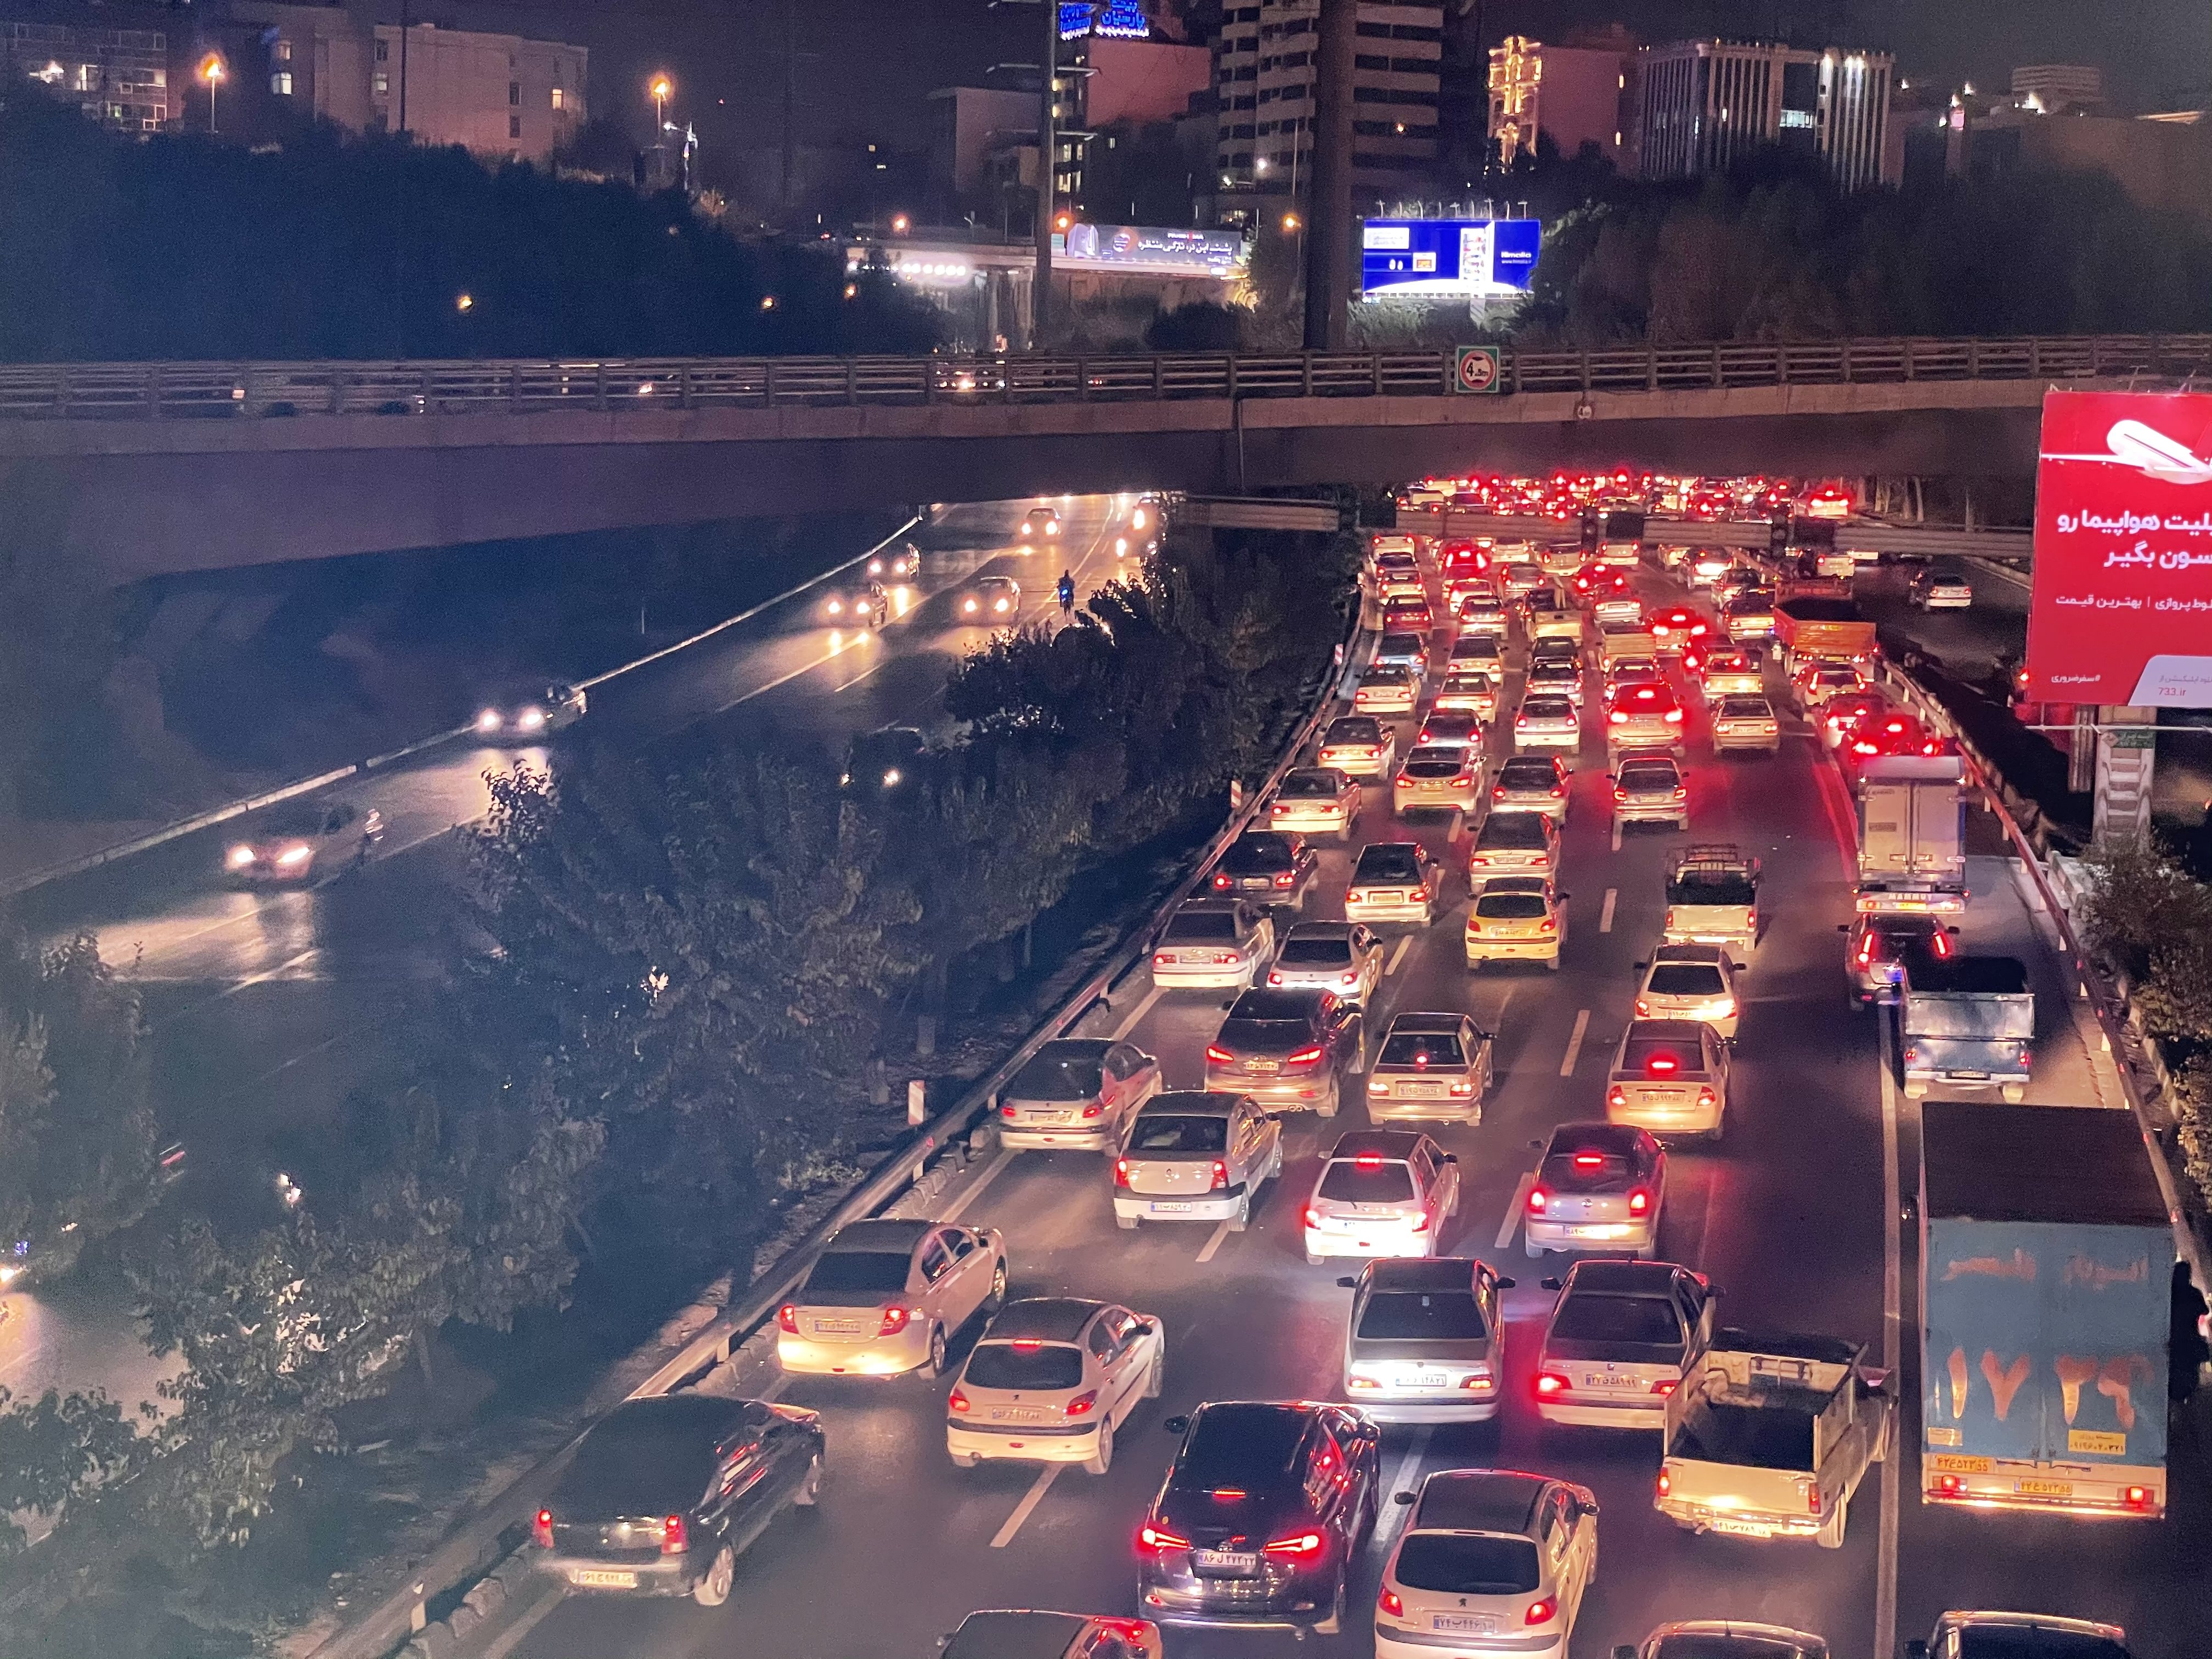 نمونه عکس دوربین تله فوتو آیفون ۱۲ پرو اپل در تاریکی - بزرگراه همت تهران